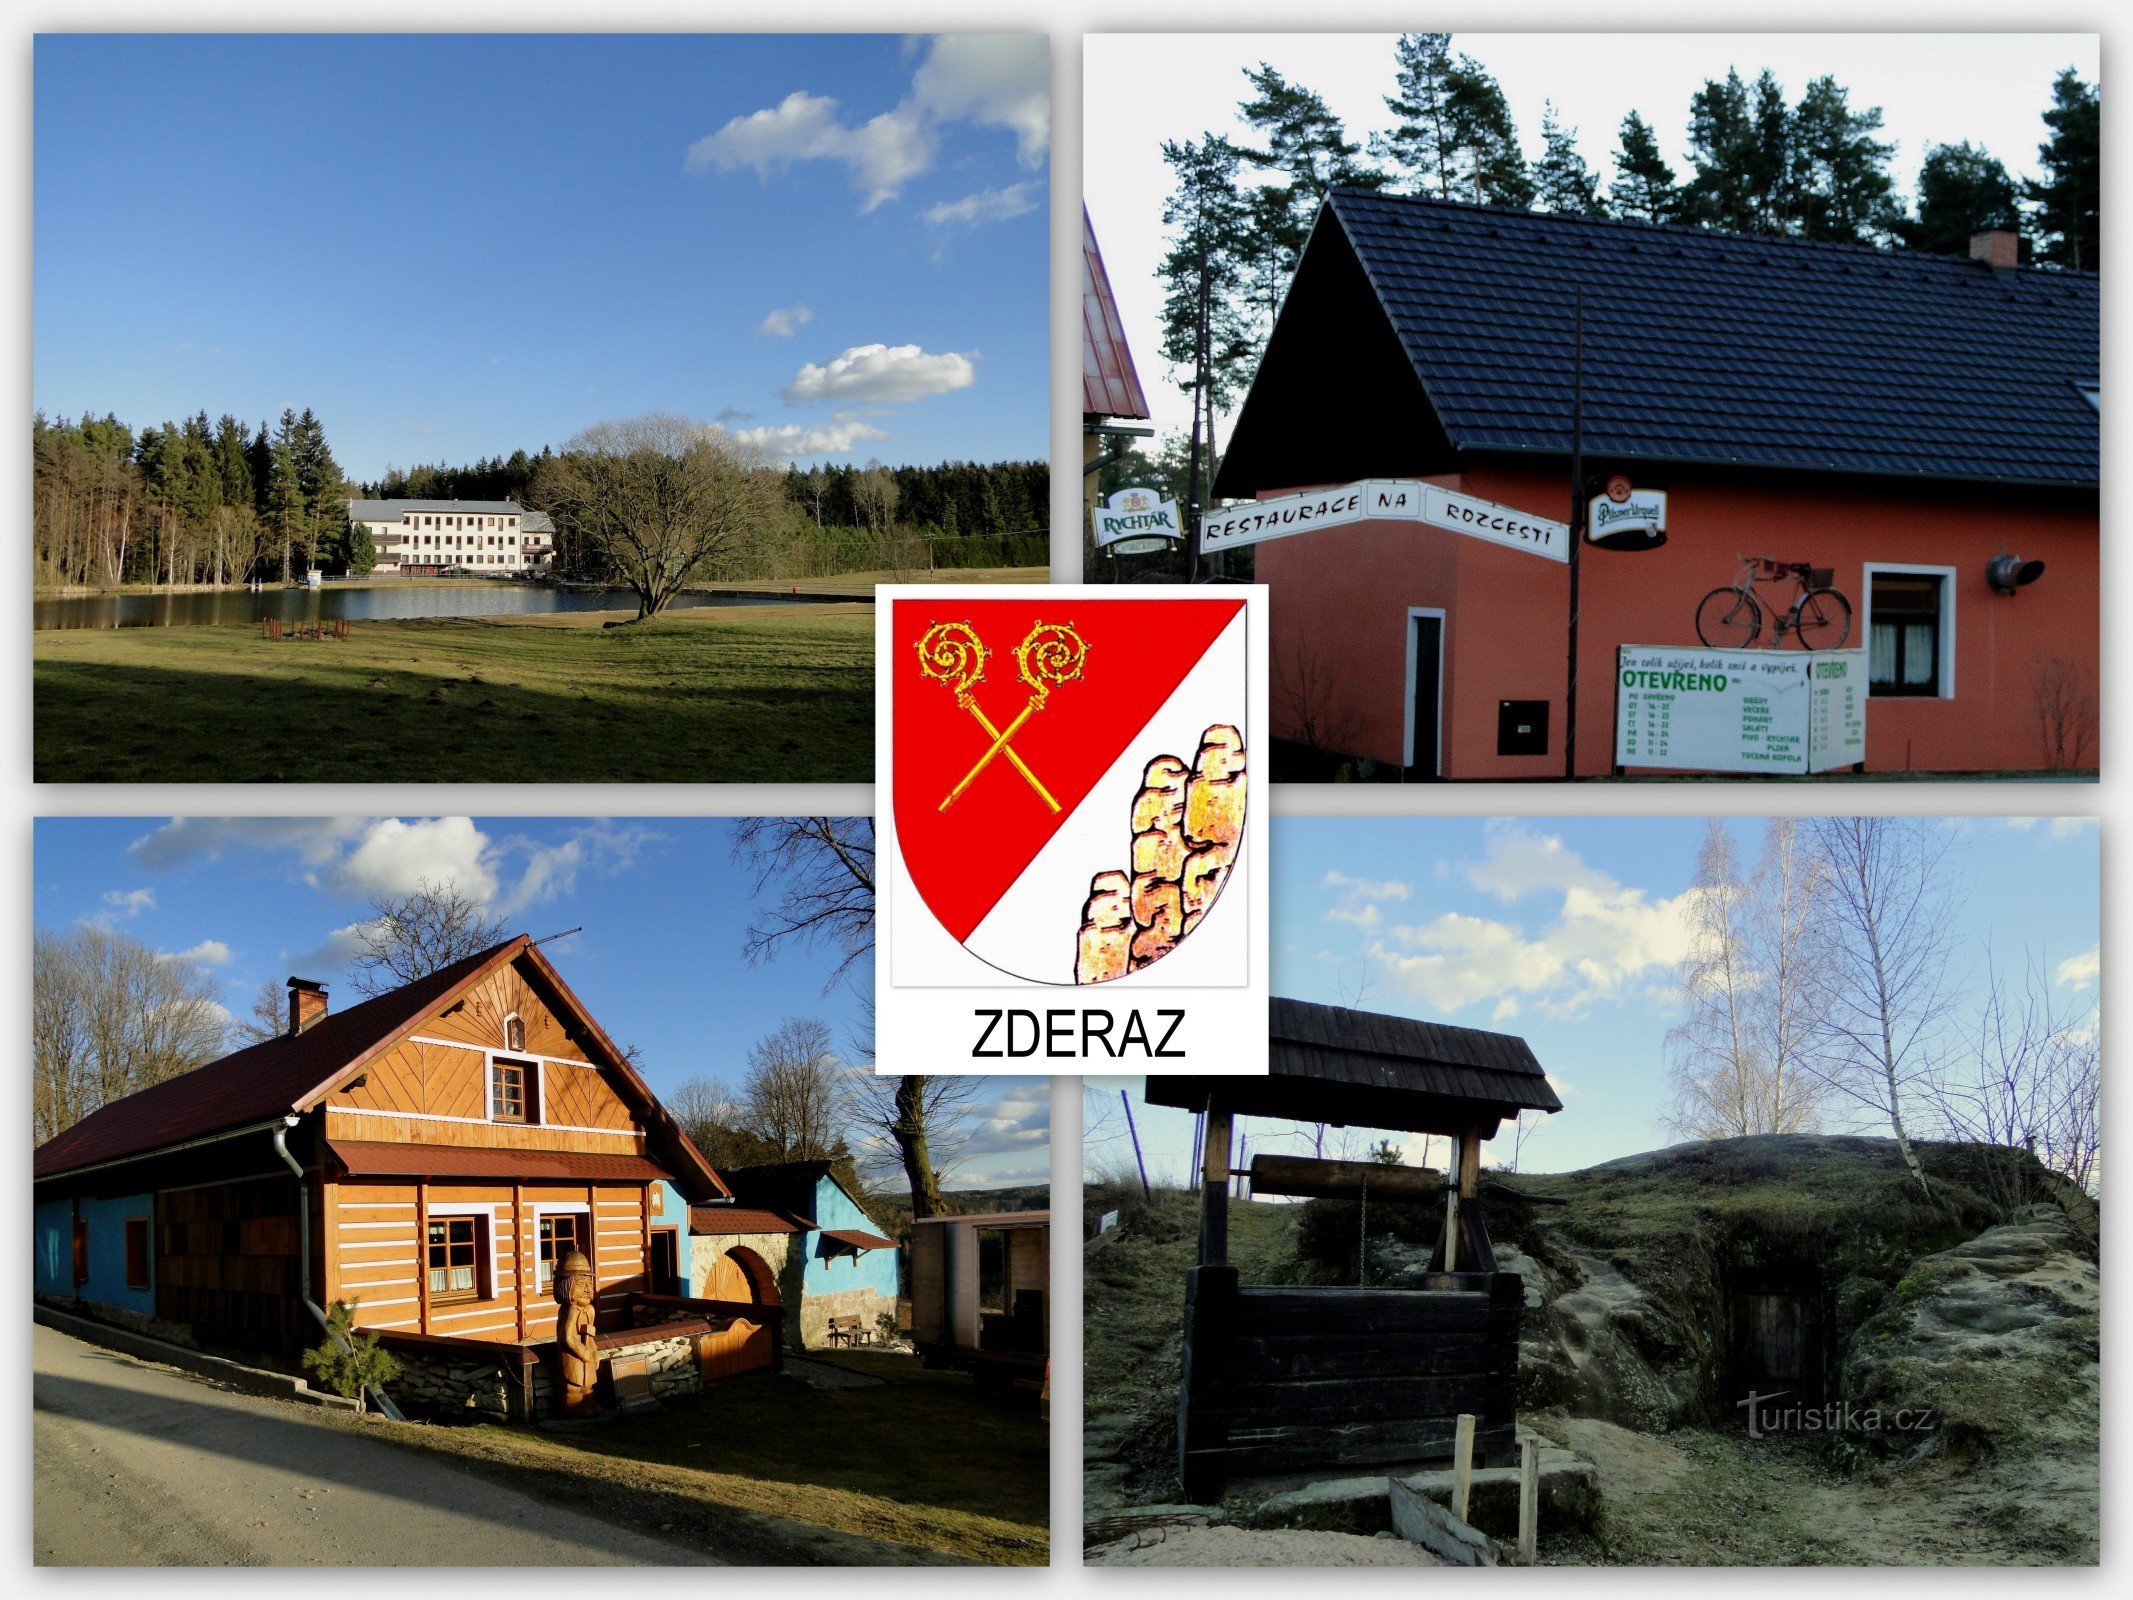 a aldeia de Zderaz